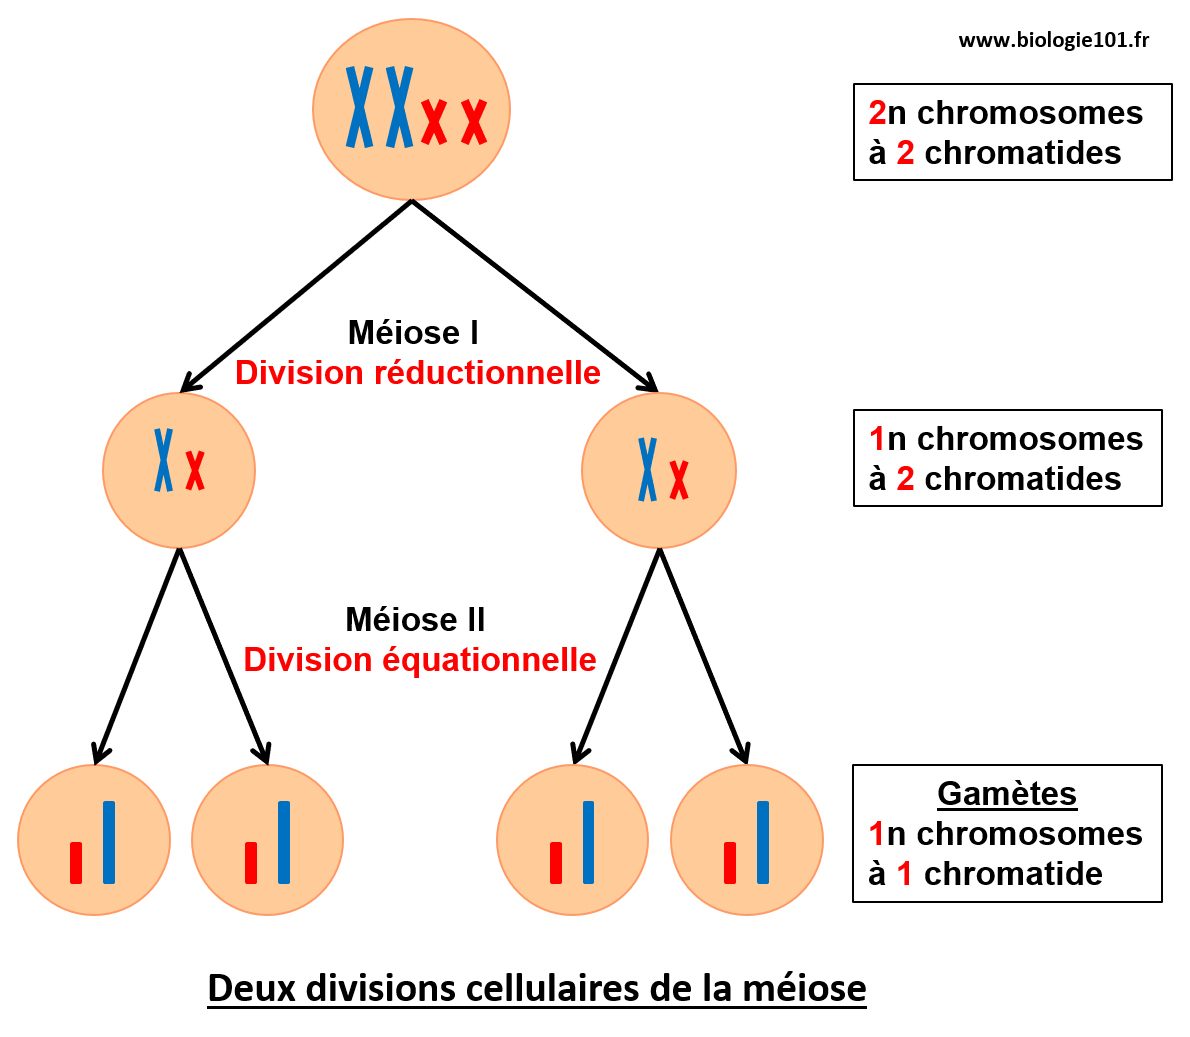 Les deux divisions de la méiose, la division réductionnelle et la division équationnelle qui permettent la formation des gamètes.